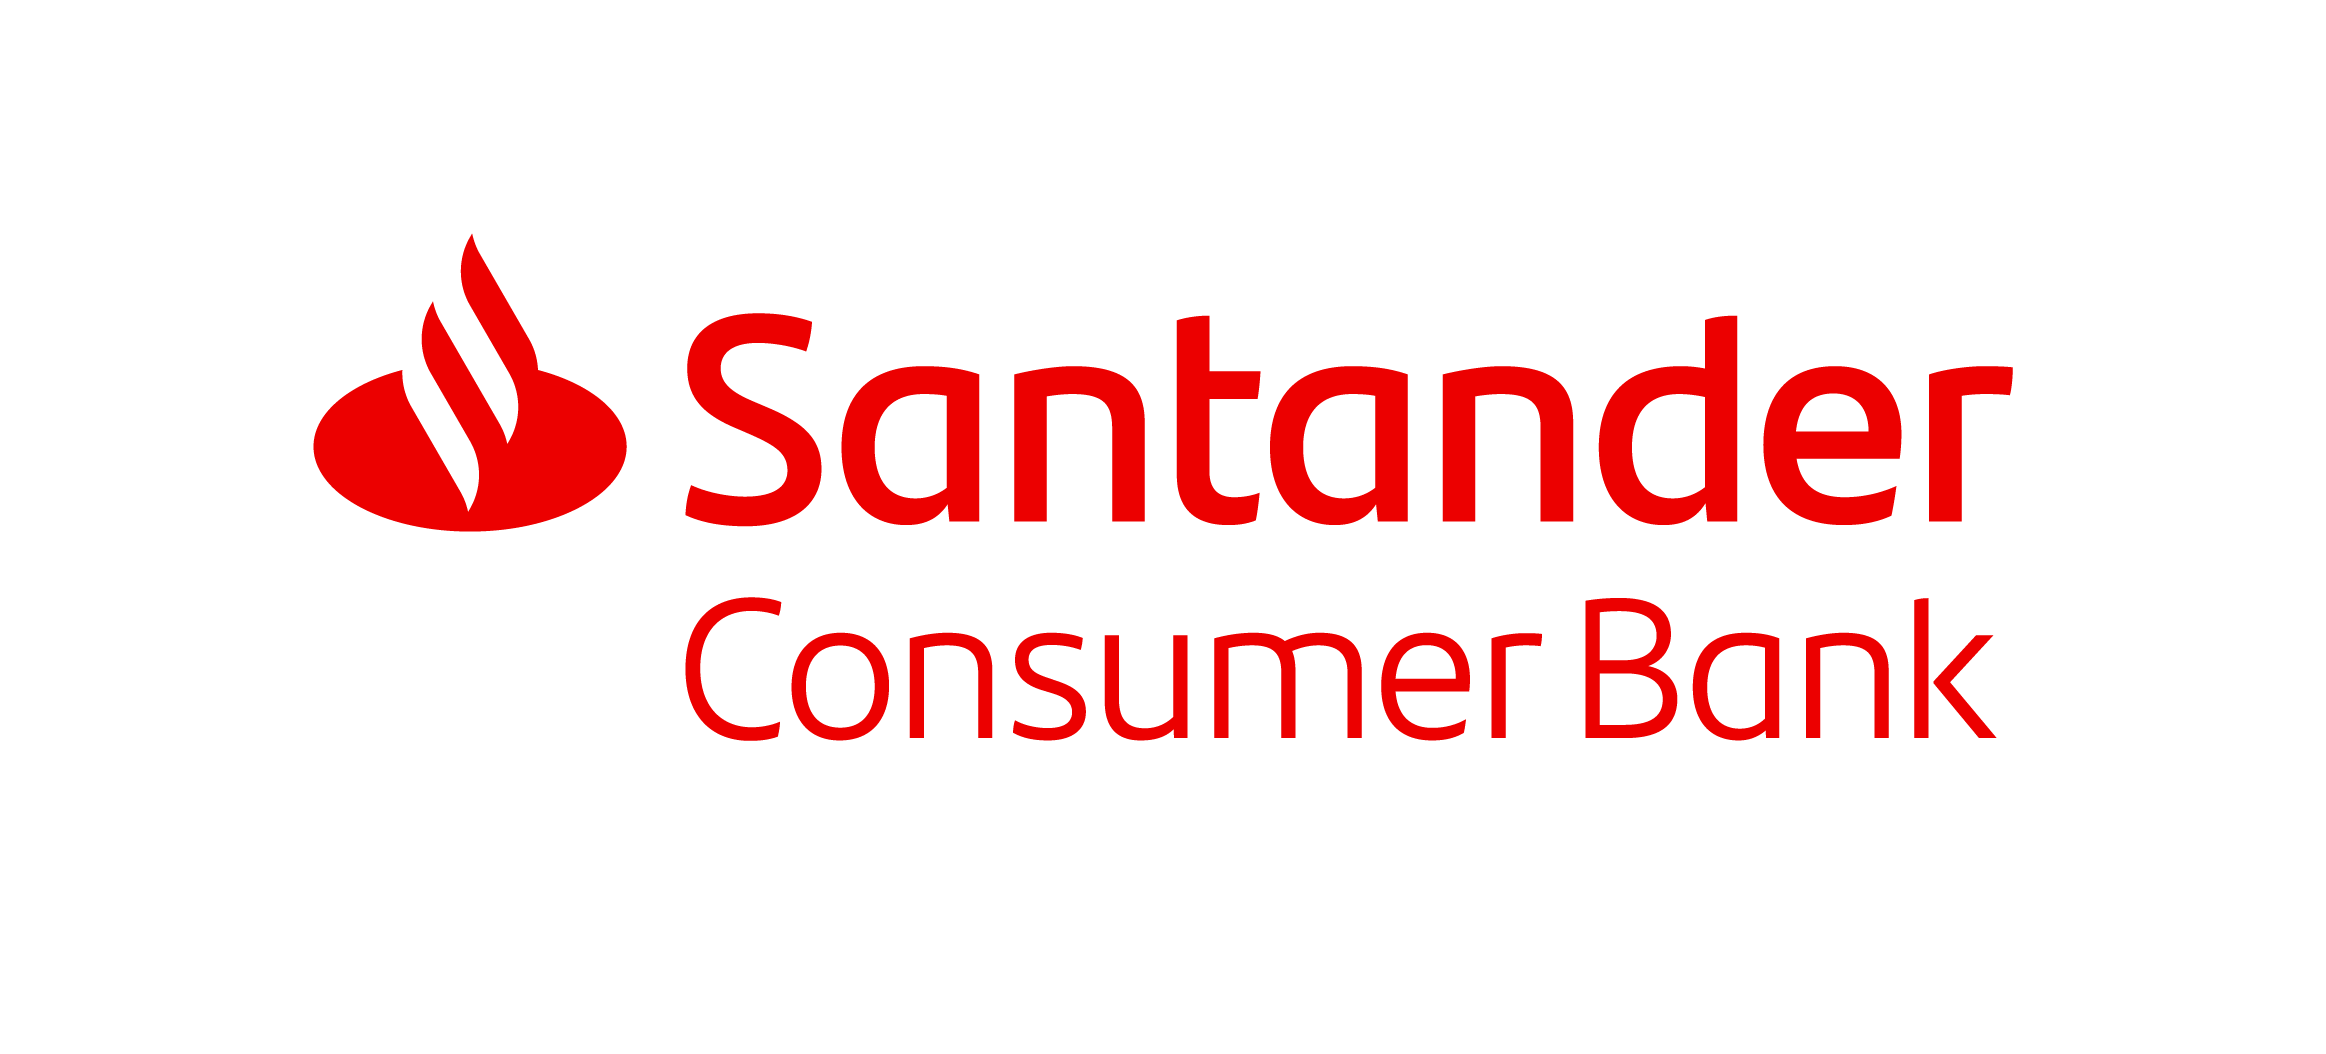 Santander Consumer Bank augmente les intérêts sur ses comptes à terme